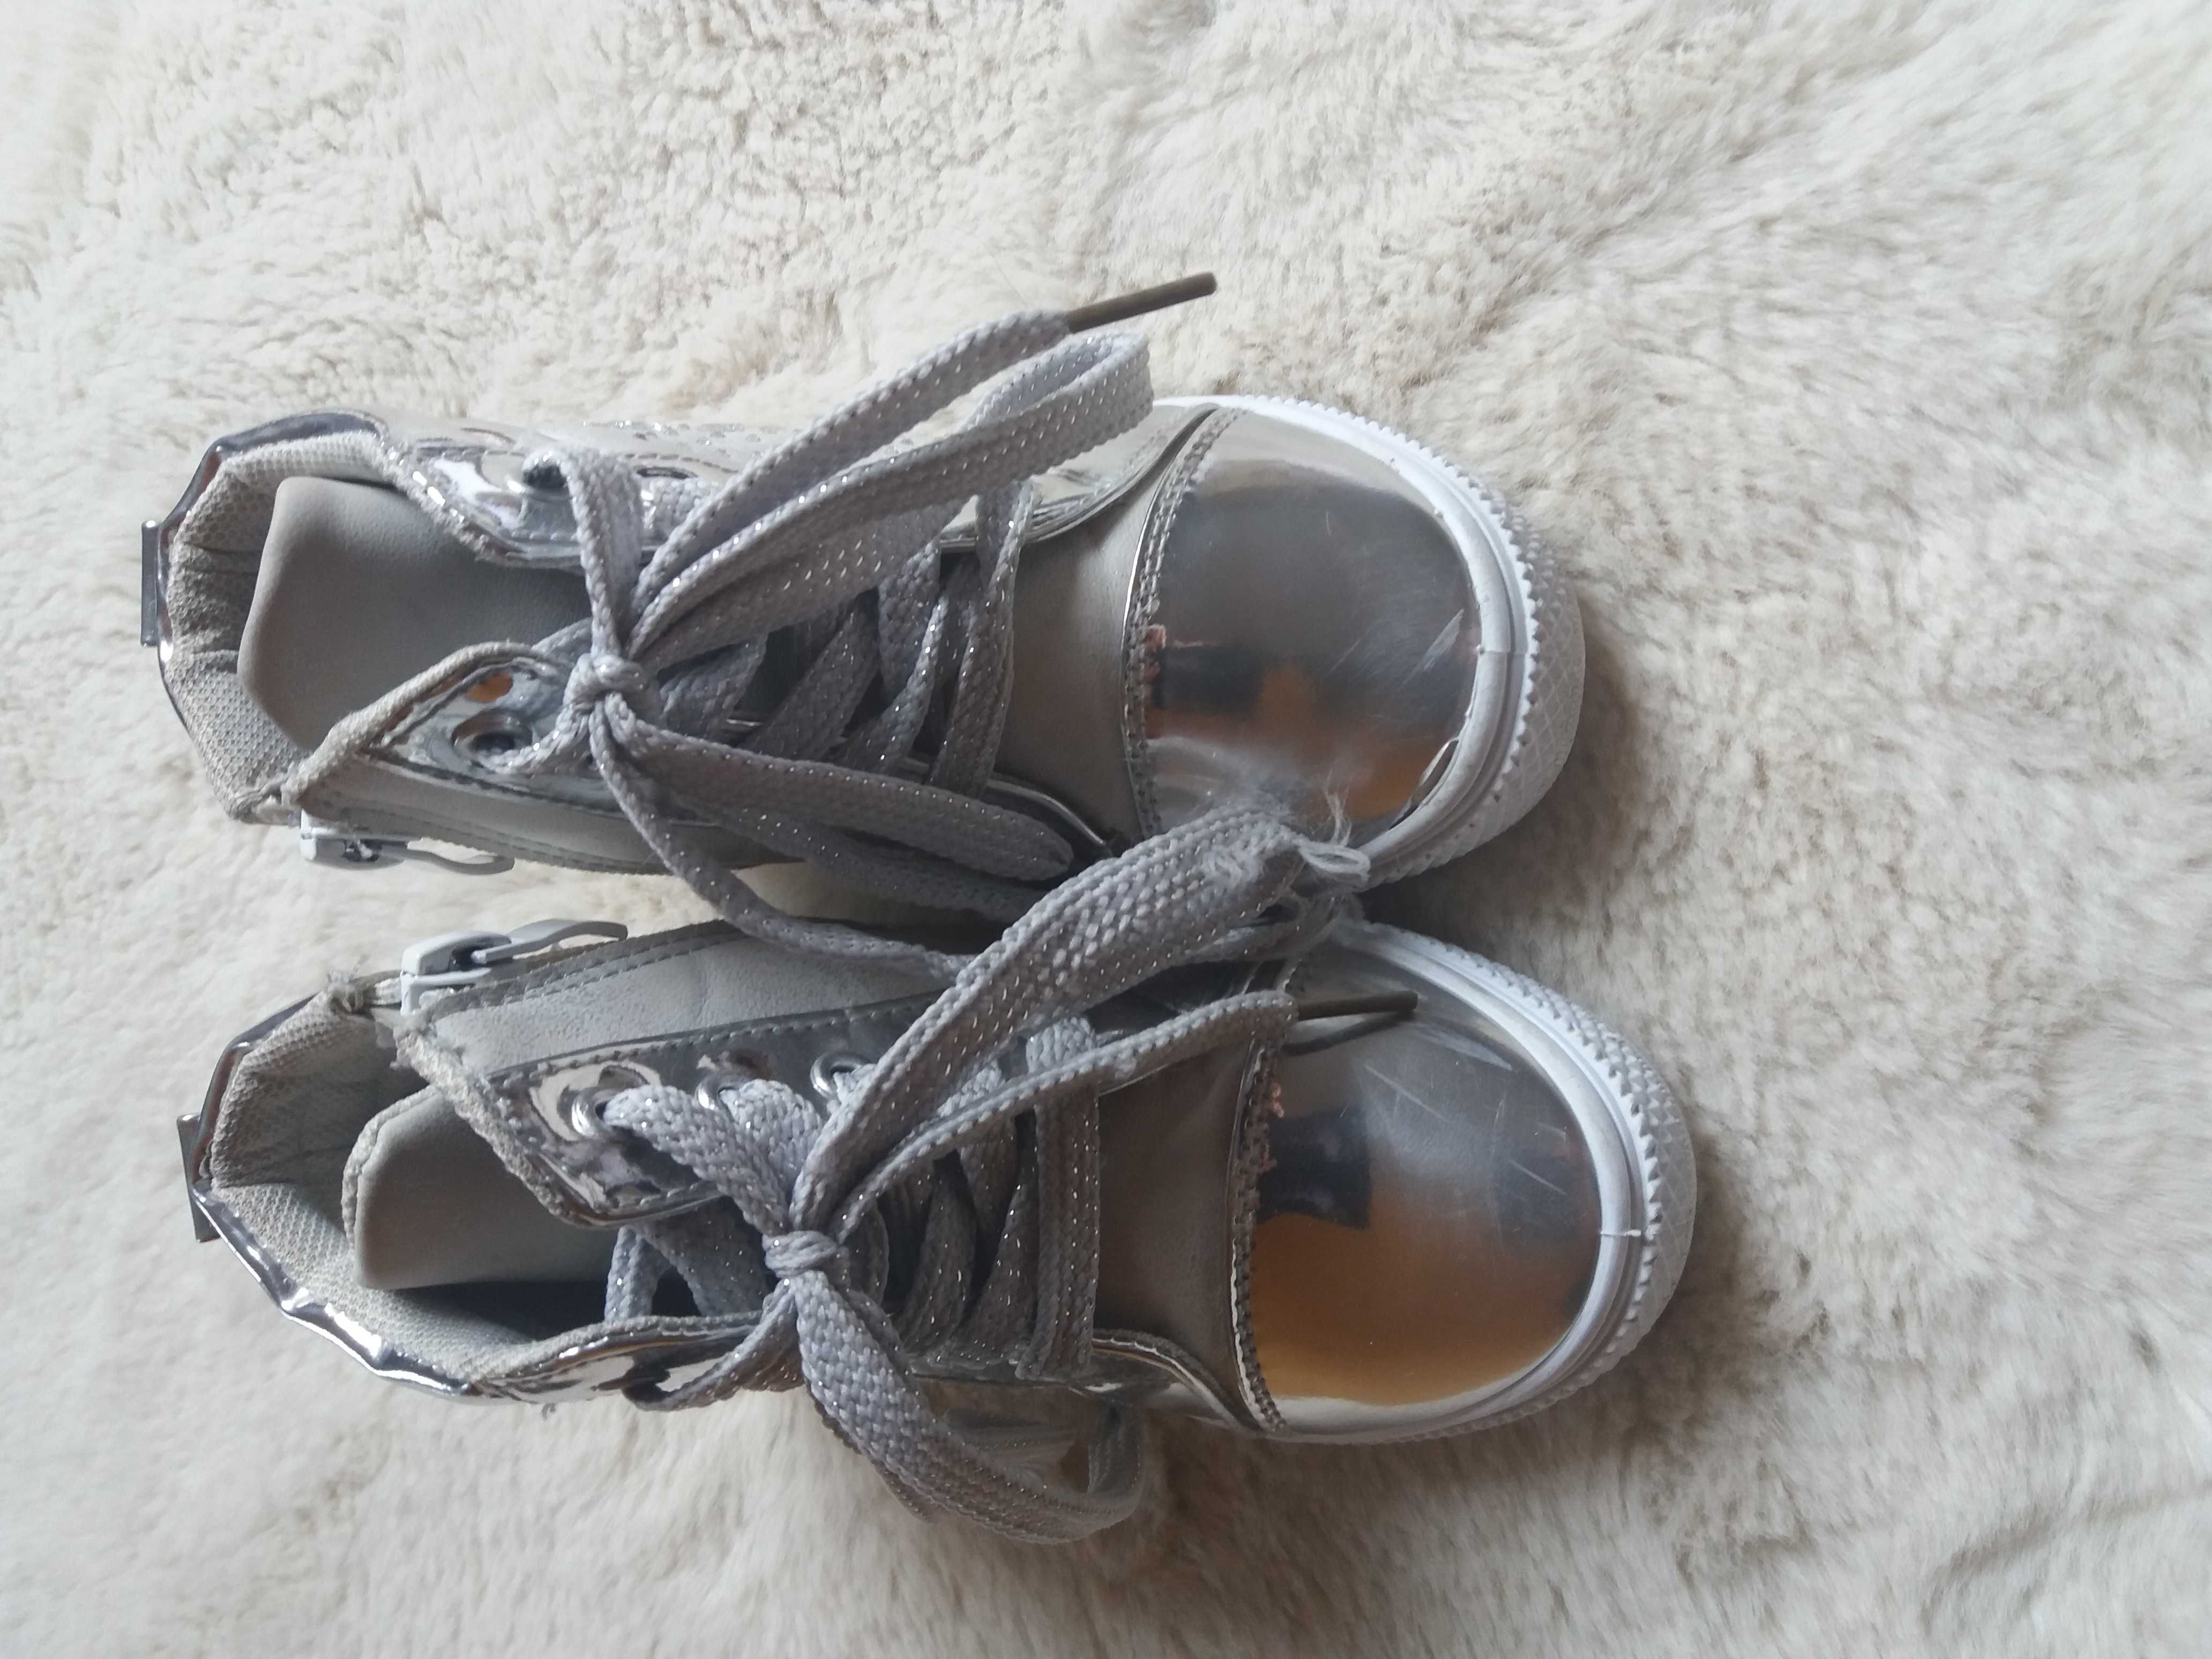 Sneakersy, botki, adidasy dziecięce rozm. 24 (dł. wkładki 15cm)